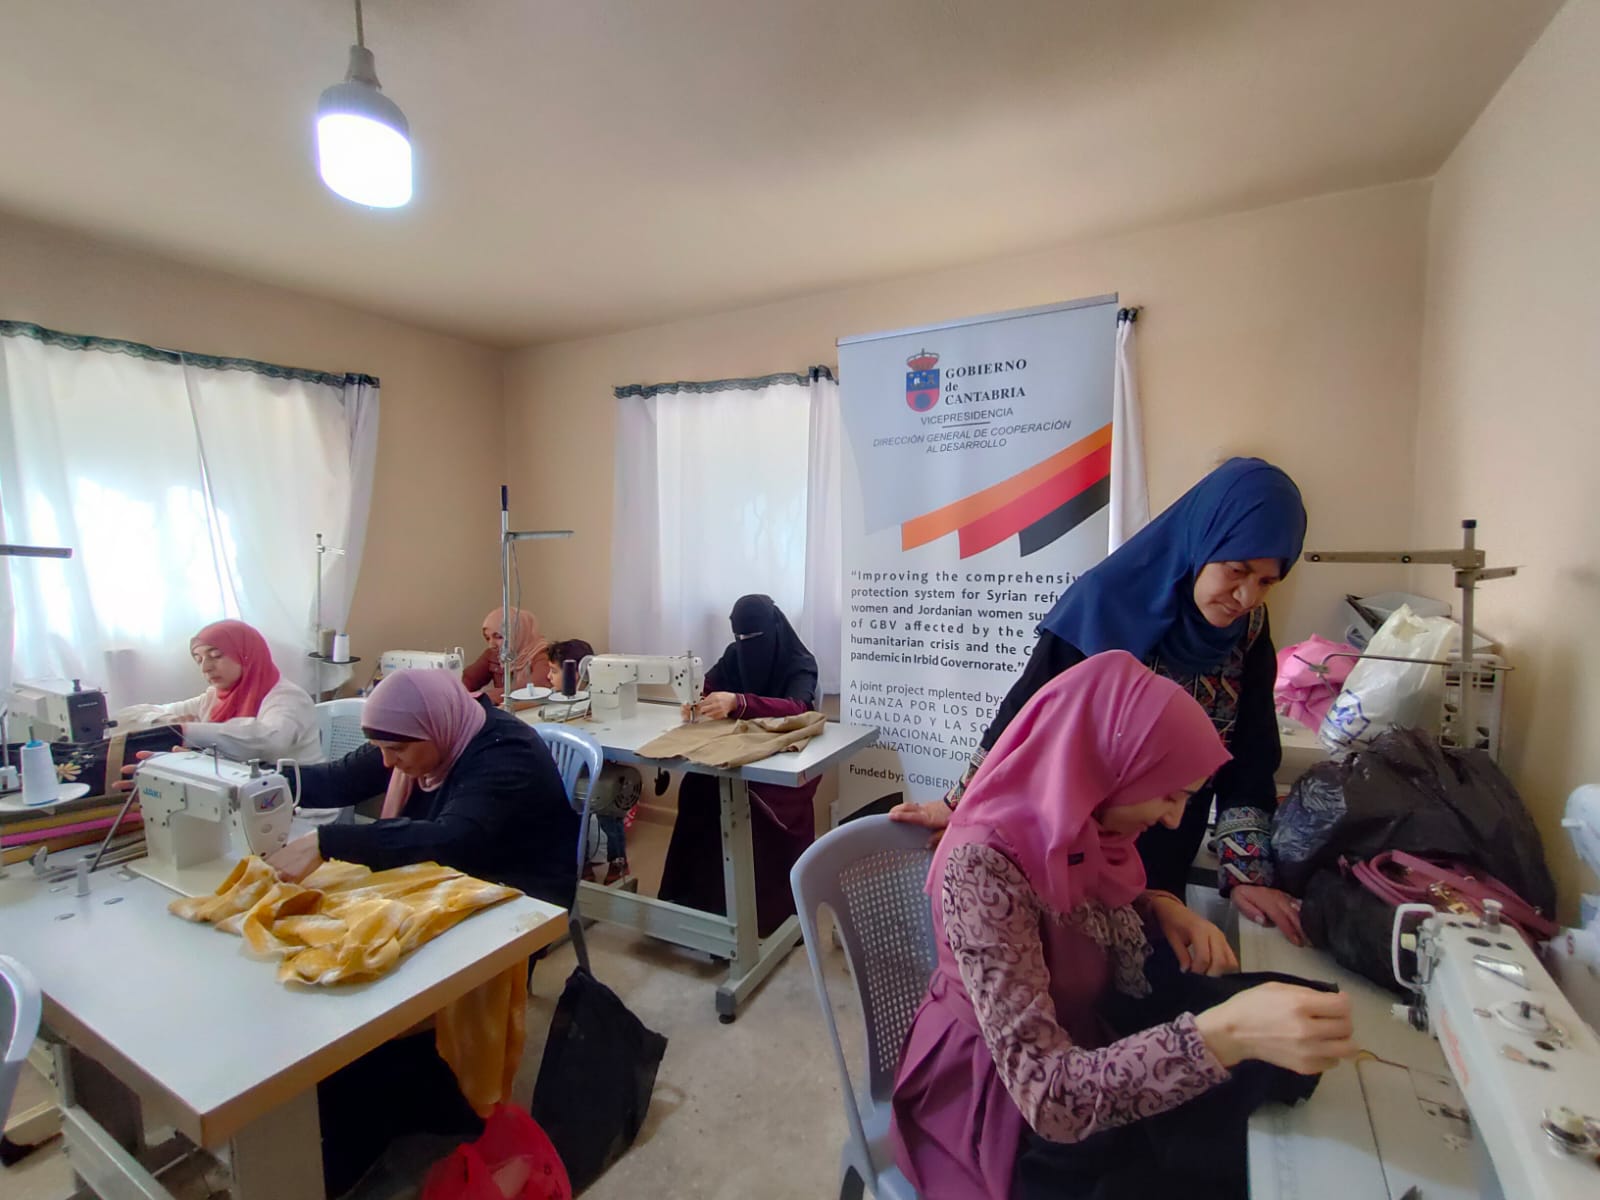  تحسين نظام الحماية الشامل للاجئات السوريات والأردنيات الناجيات من العنف القائم على النوع الاجتماعي والمتأثرات بالأزمة الإنسانية السورية ووباء COVID-19 في محافظة إربد.